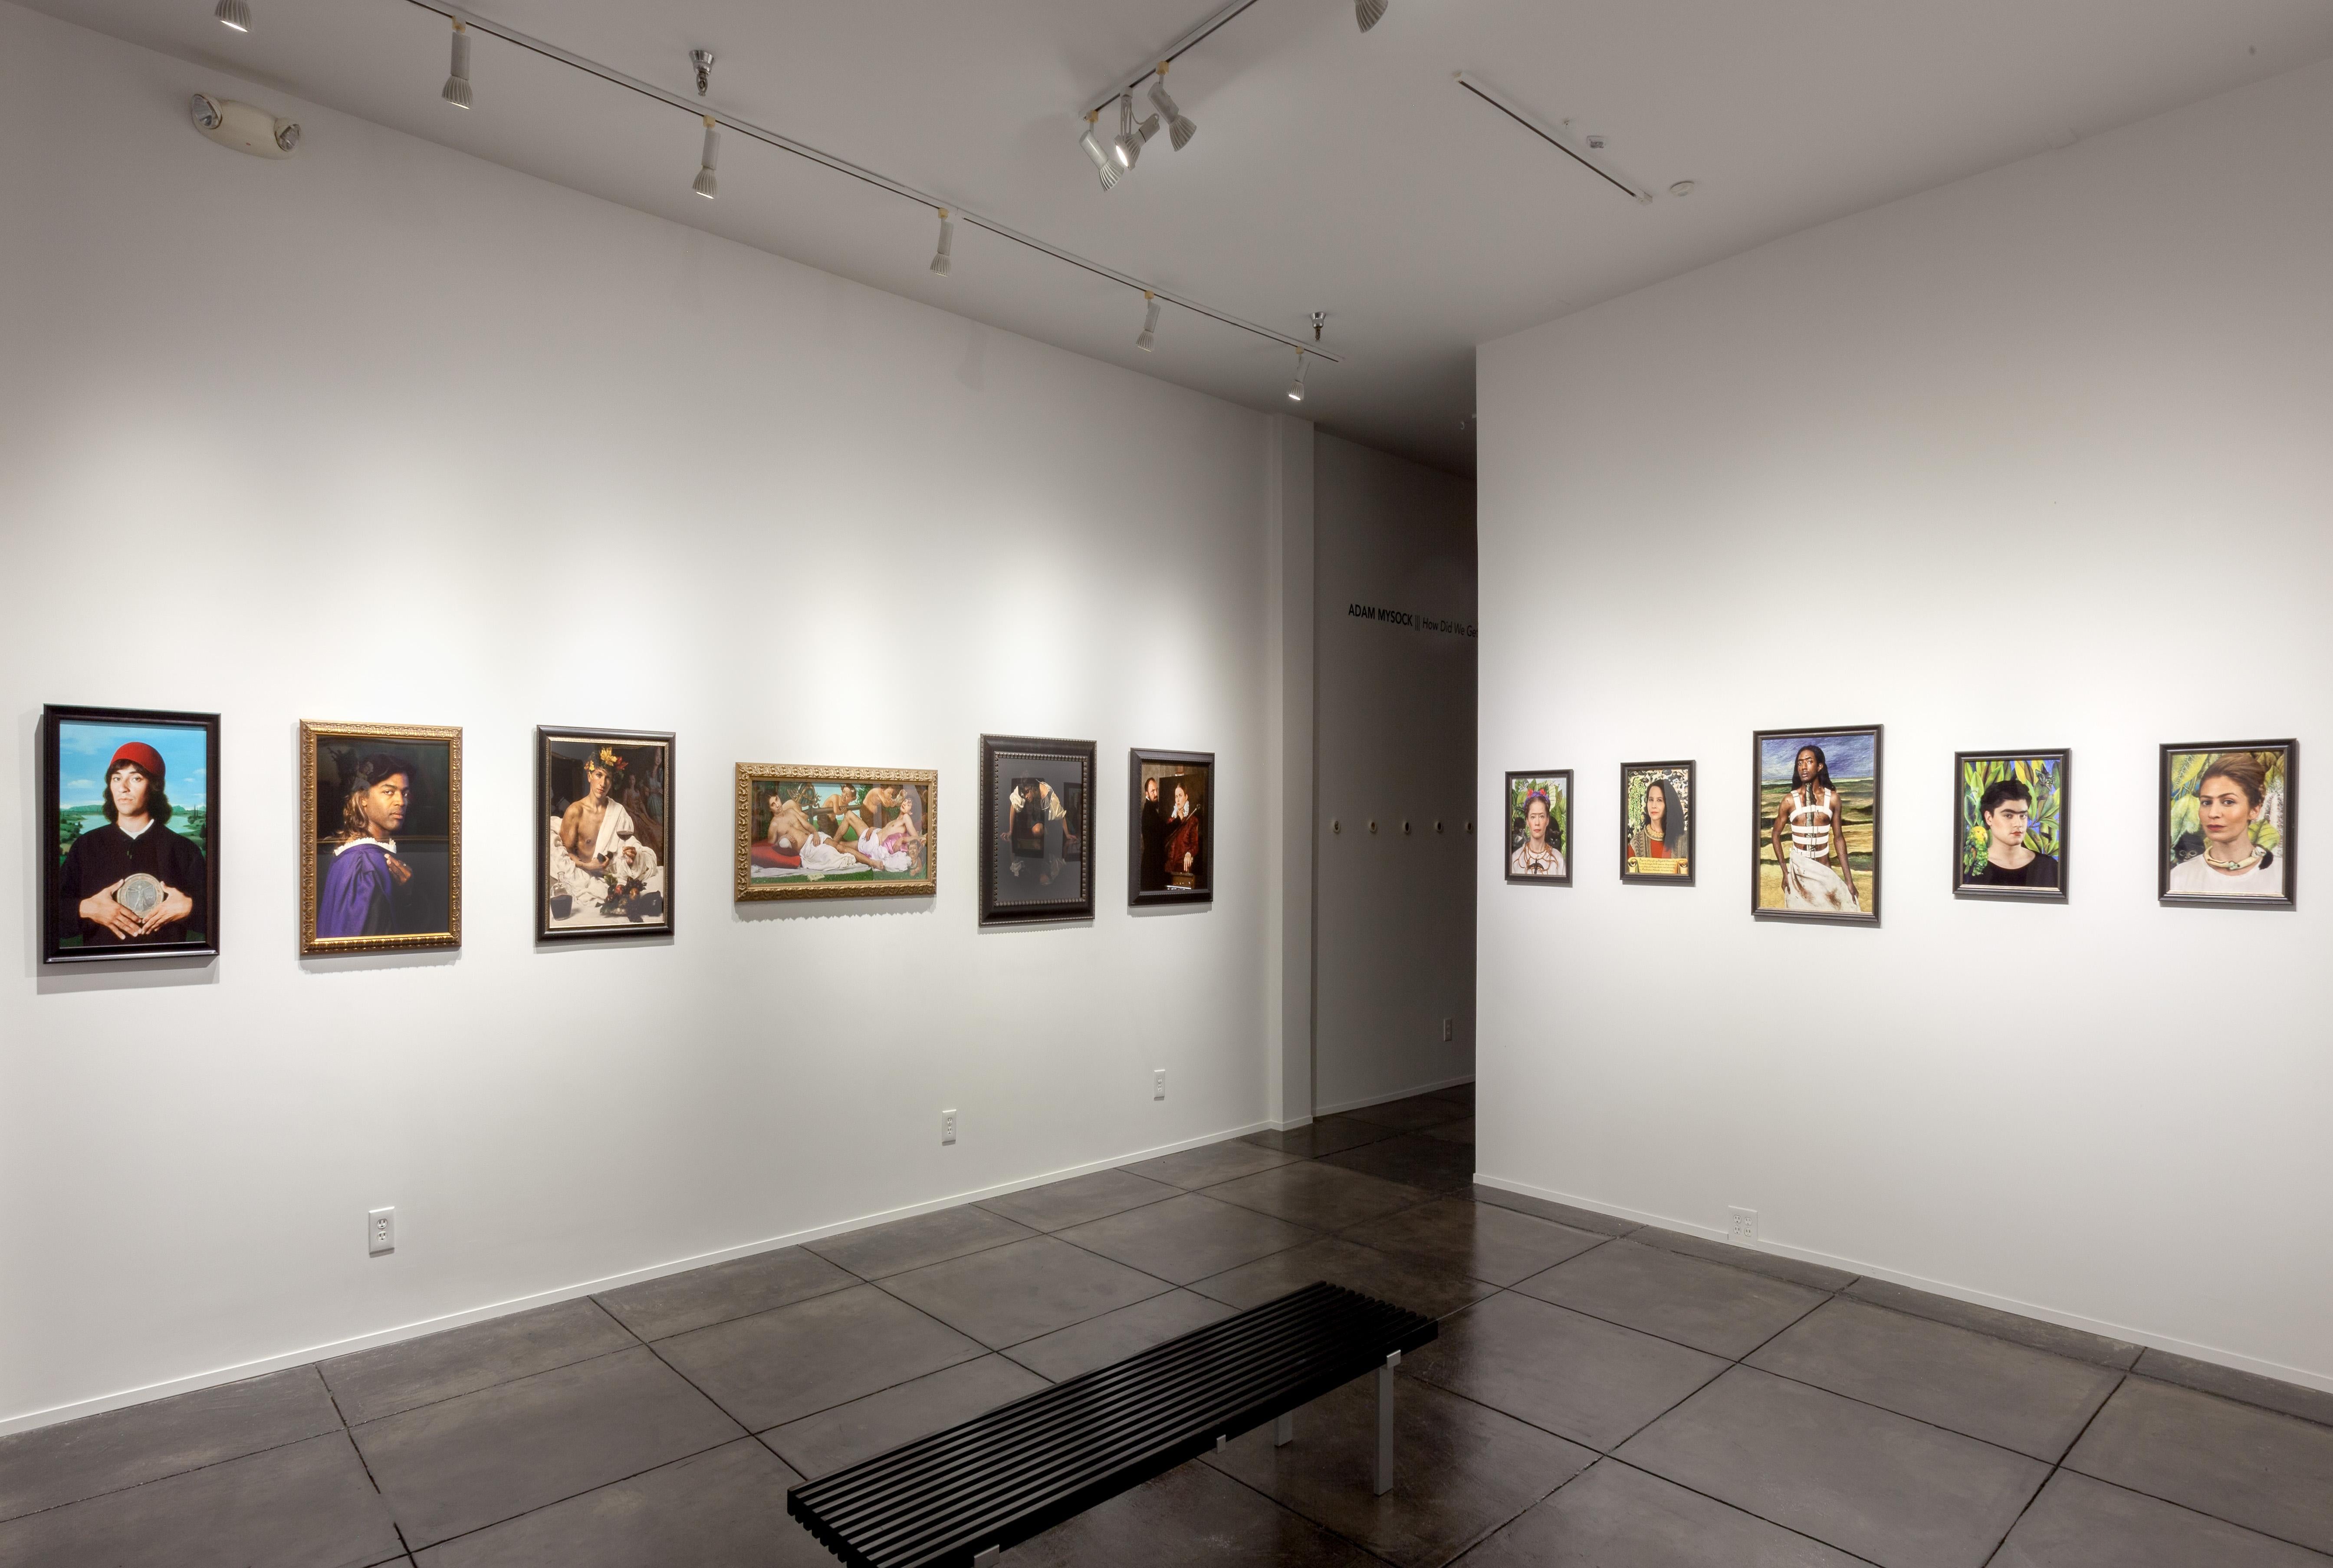 24 x 18,75 Zoll - Auflage 1 von 5 mit 2 APs

ERKLÄRUNG:
e2, eine Collaboration zwischen den Künstlern Elizabeth Kleinveld und Epaul Julien aus New Orleans, interpretiert ikonische Bilder aus der Kunstgeschichte neu, um die Insellage des westlichen